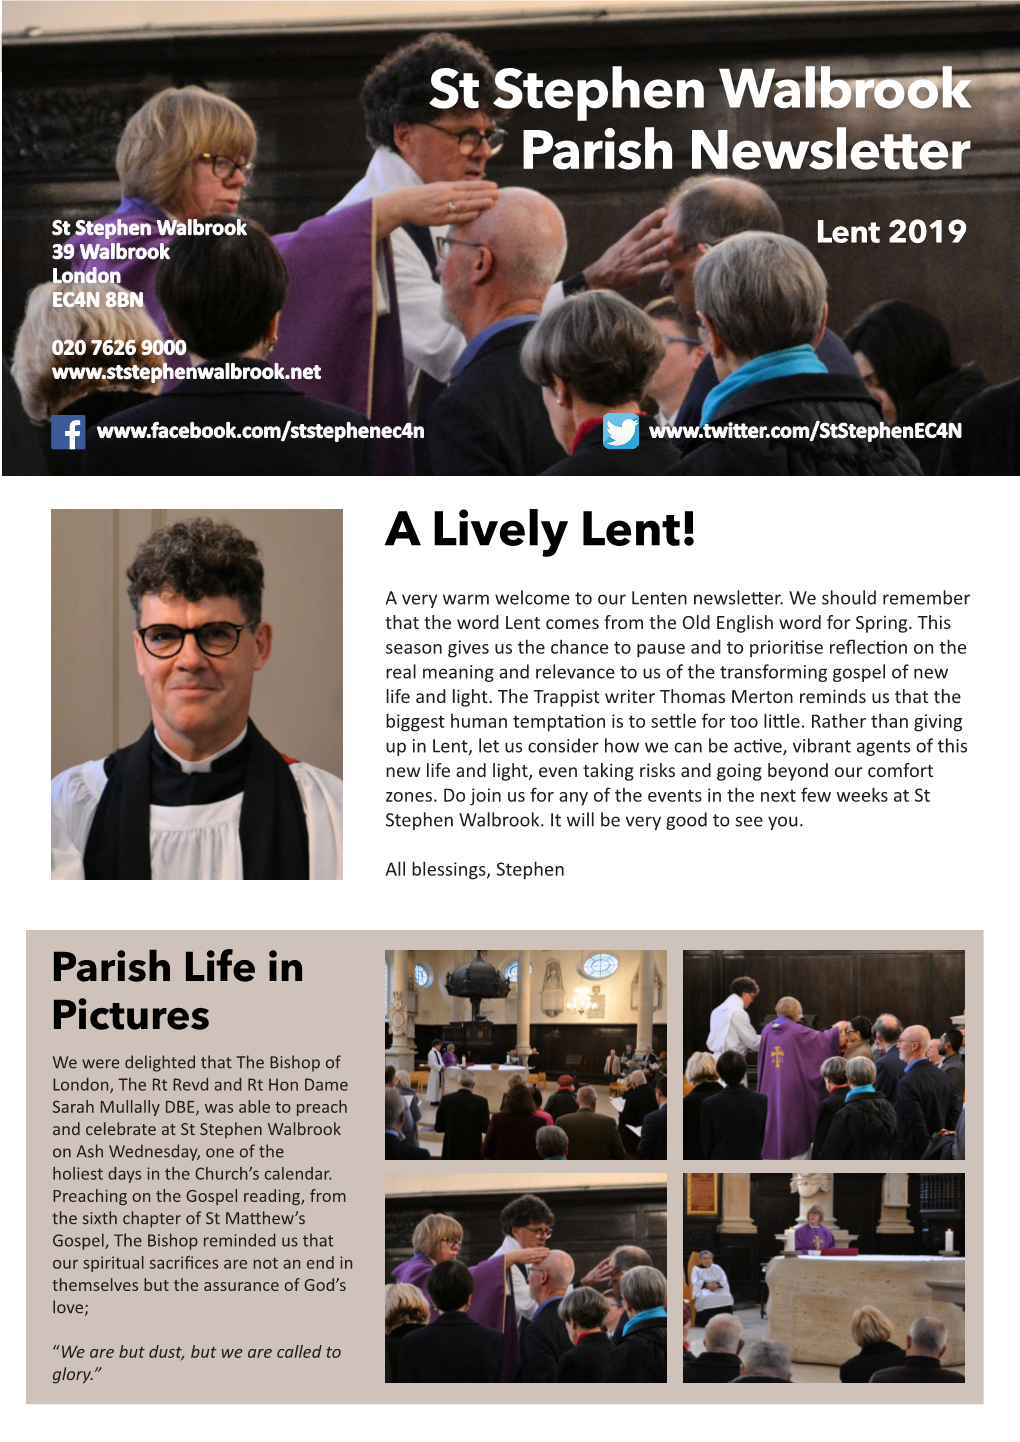 St Stephen Walbrook Parish Newsletter